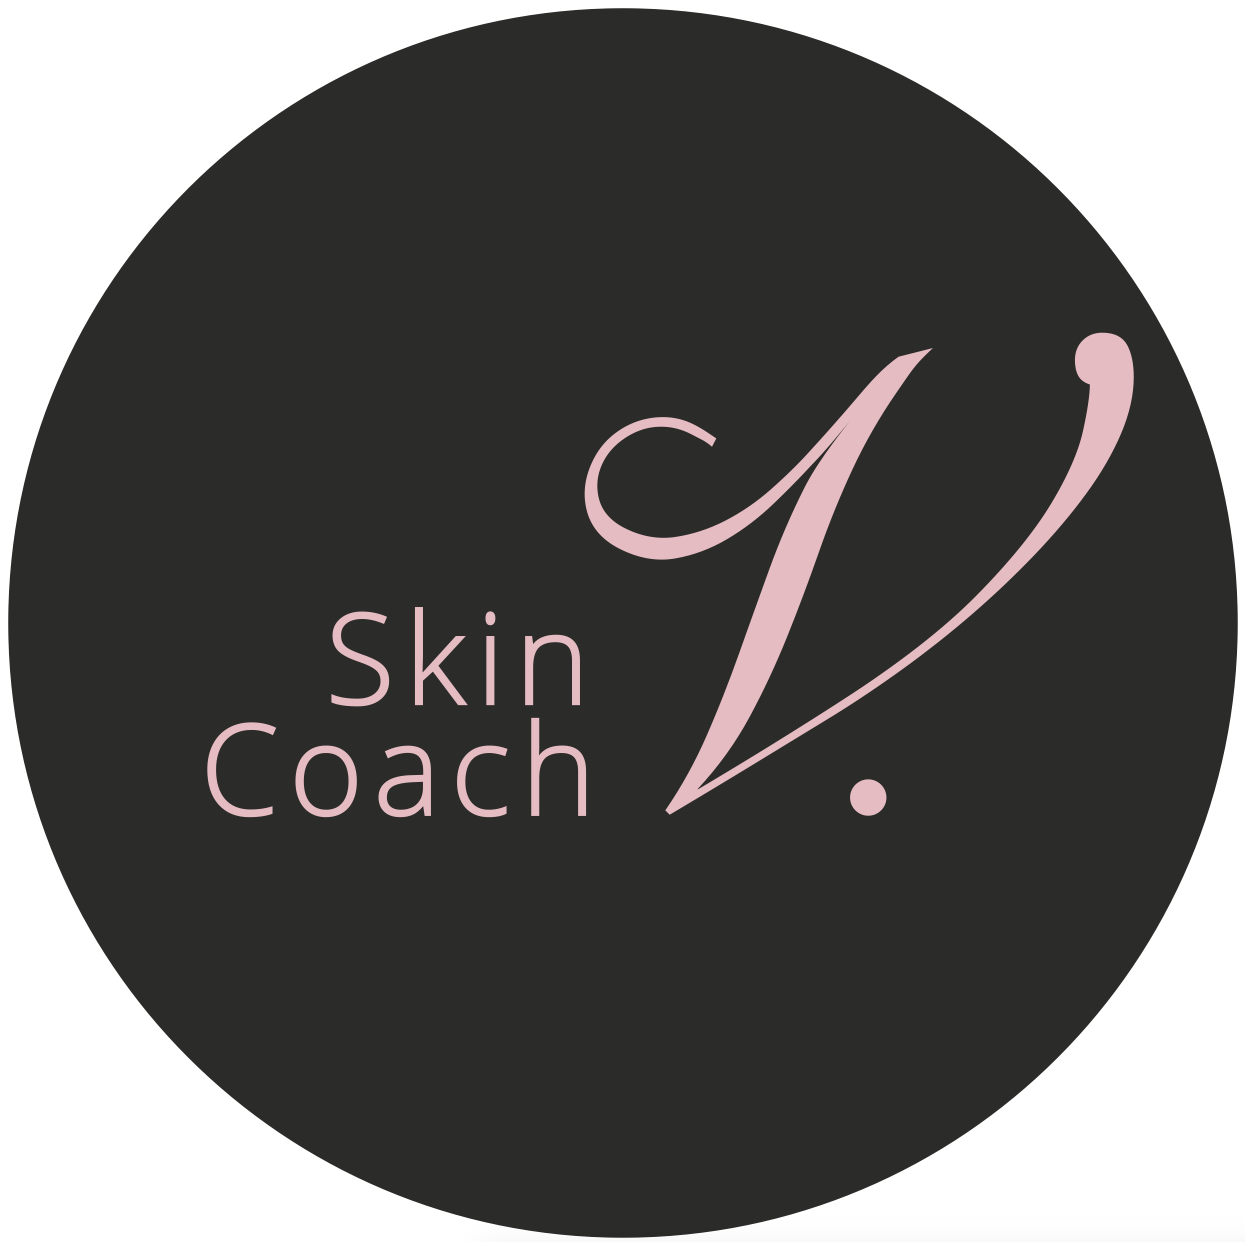 Skin Coach label